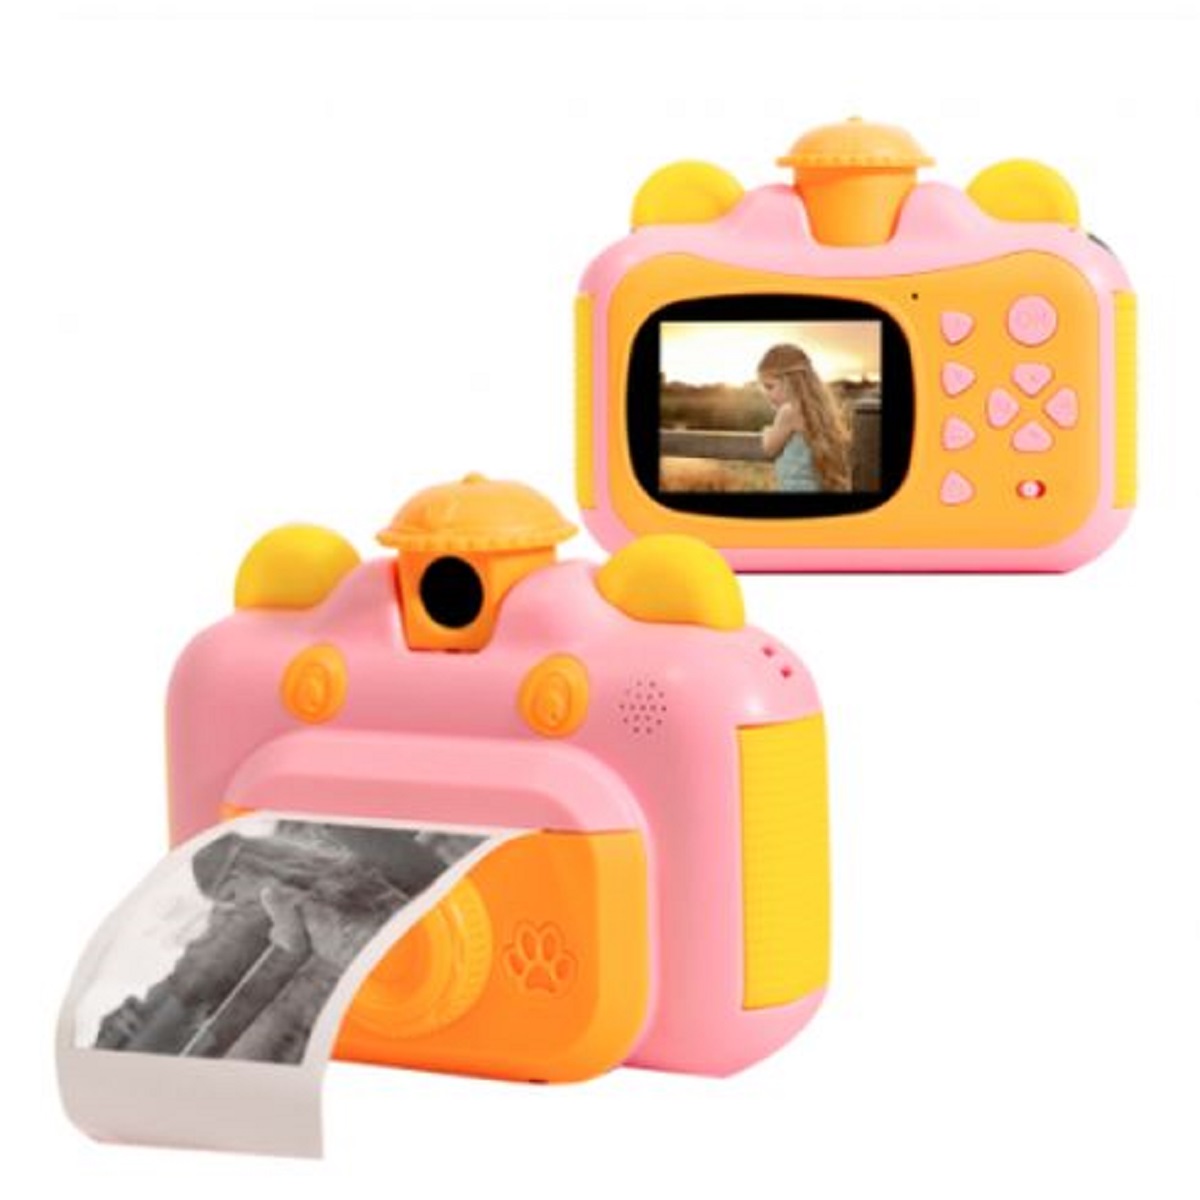 Детский фотоаппарат Leilam с мгновенной печатью фотографий 632714 детский фотоаппарат leilam с мгновенной печатью фотографий 632714